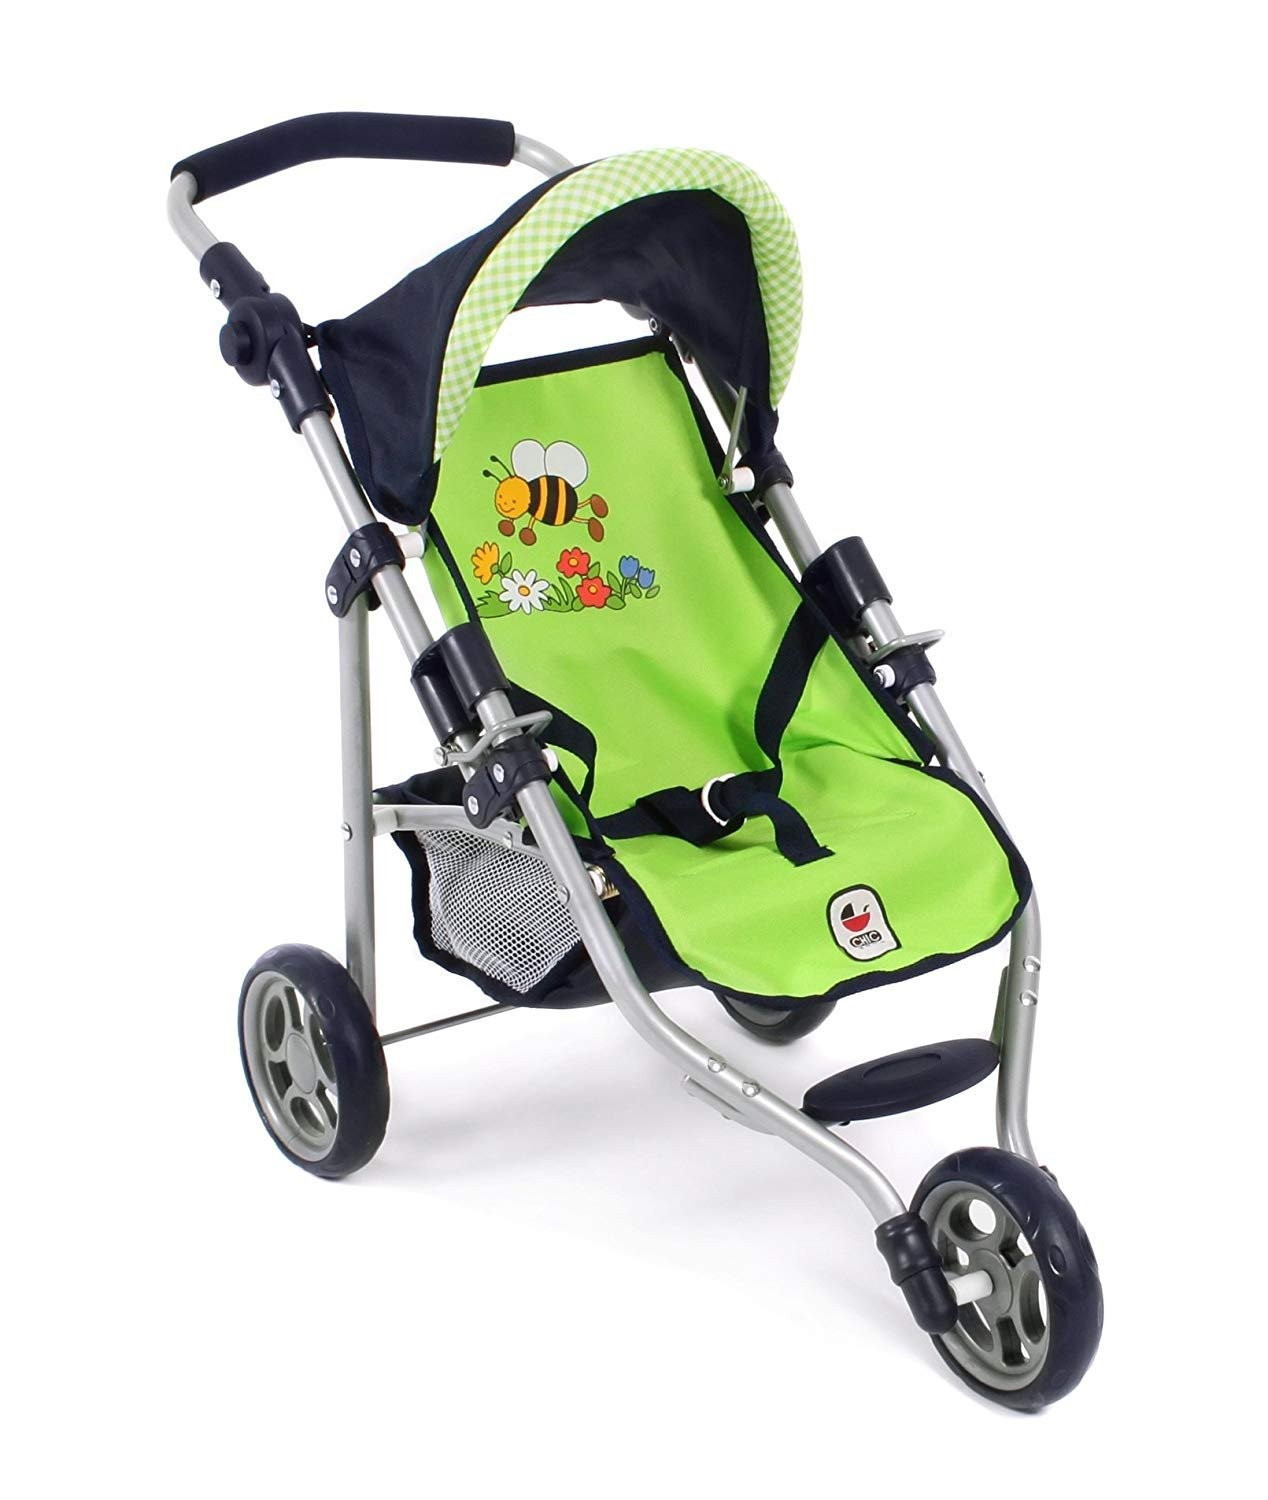 Mały wózek dla lalek, spacerówka firmy Bayer Chic, model: 612 16